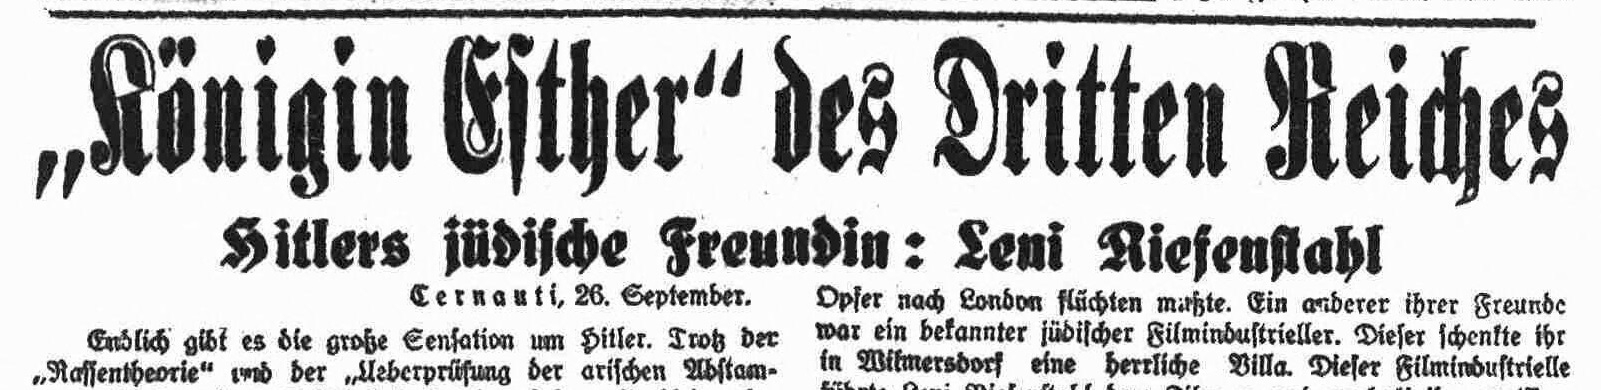  Czernowitzer Morgenblatt, 27.9.1934 (Digitales Forum Mittel- und Osteuropa e.V)